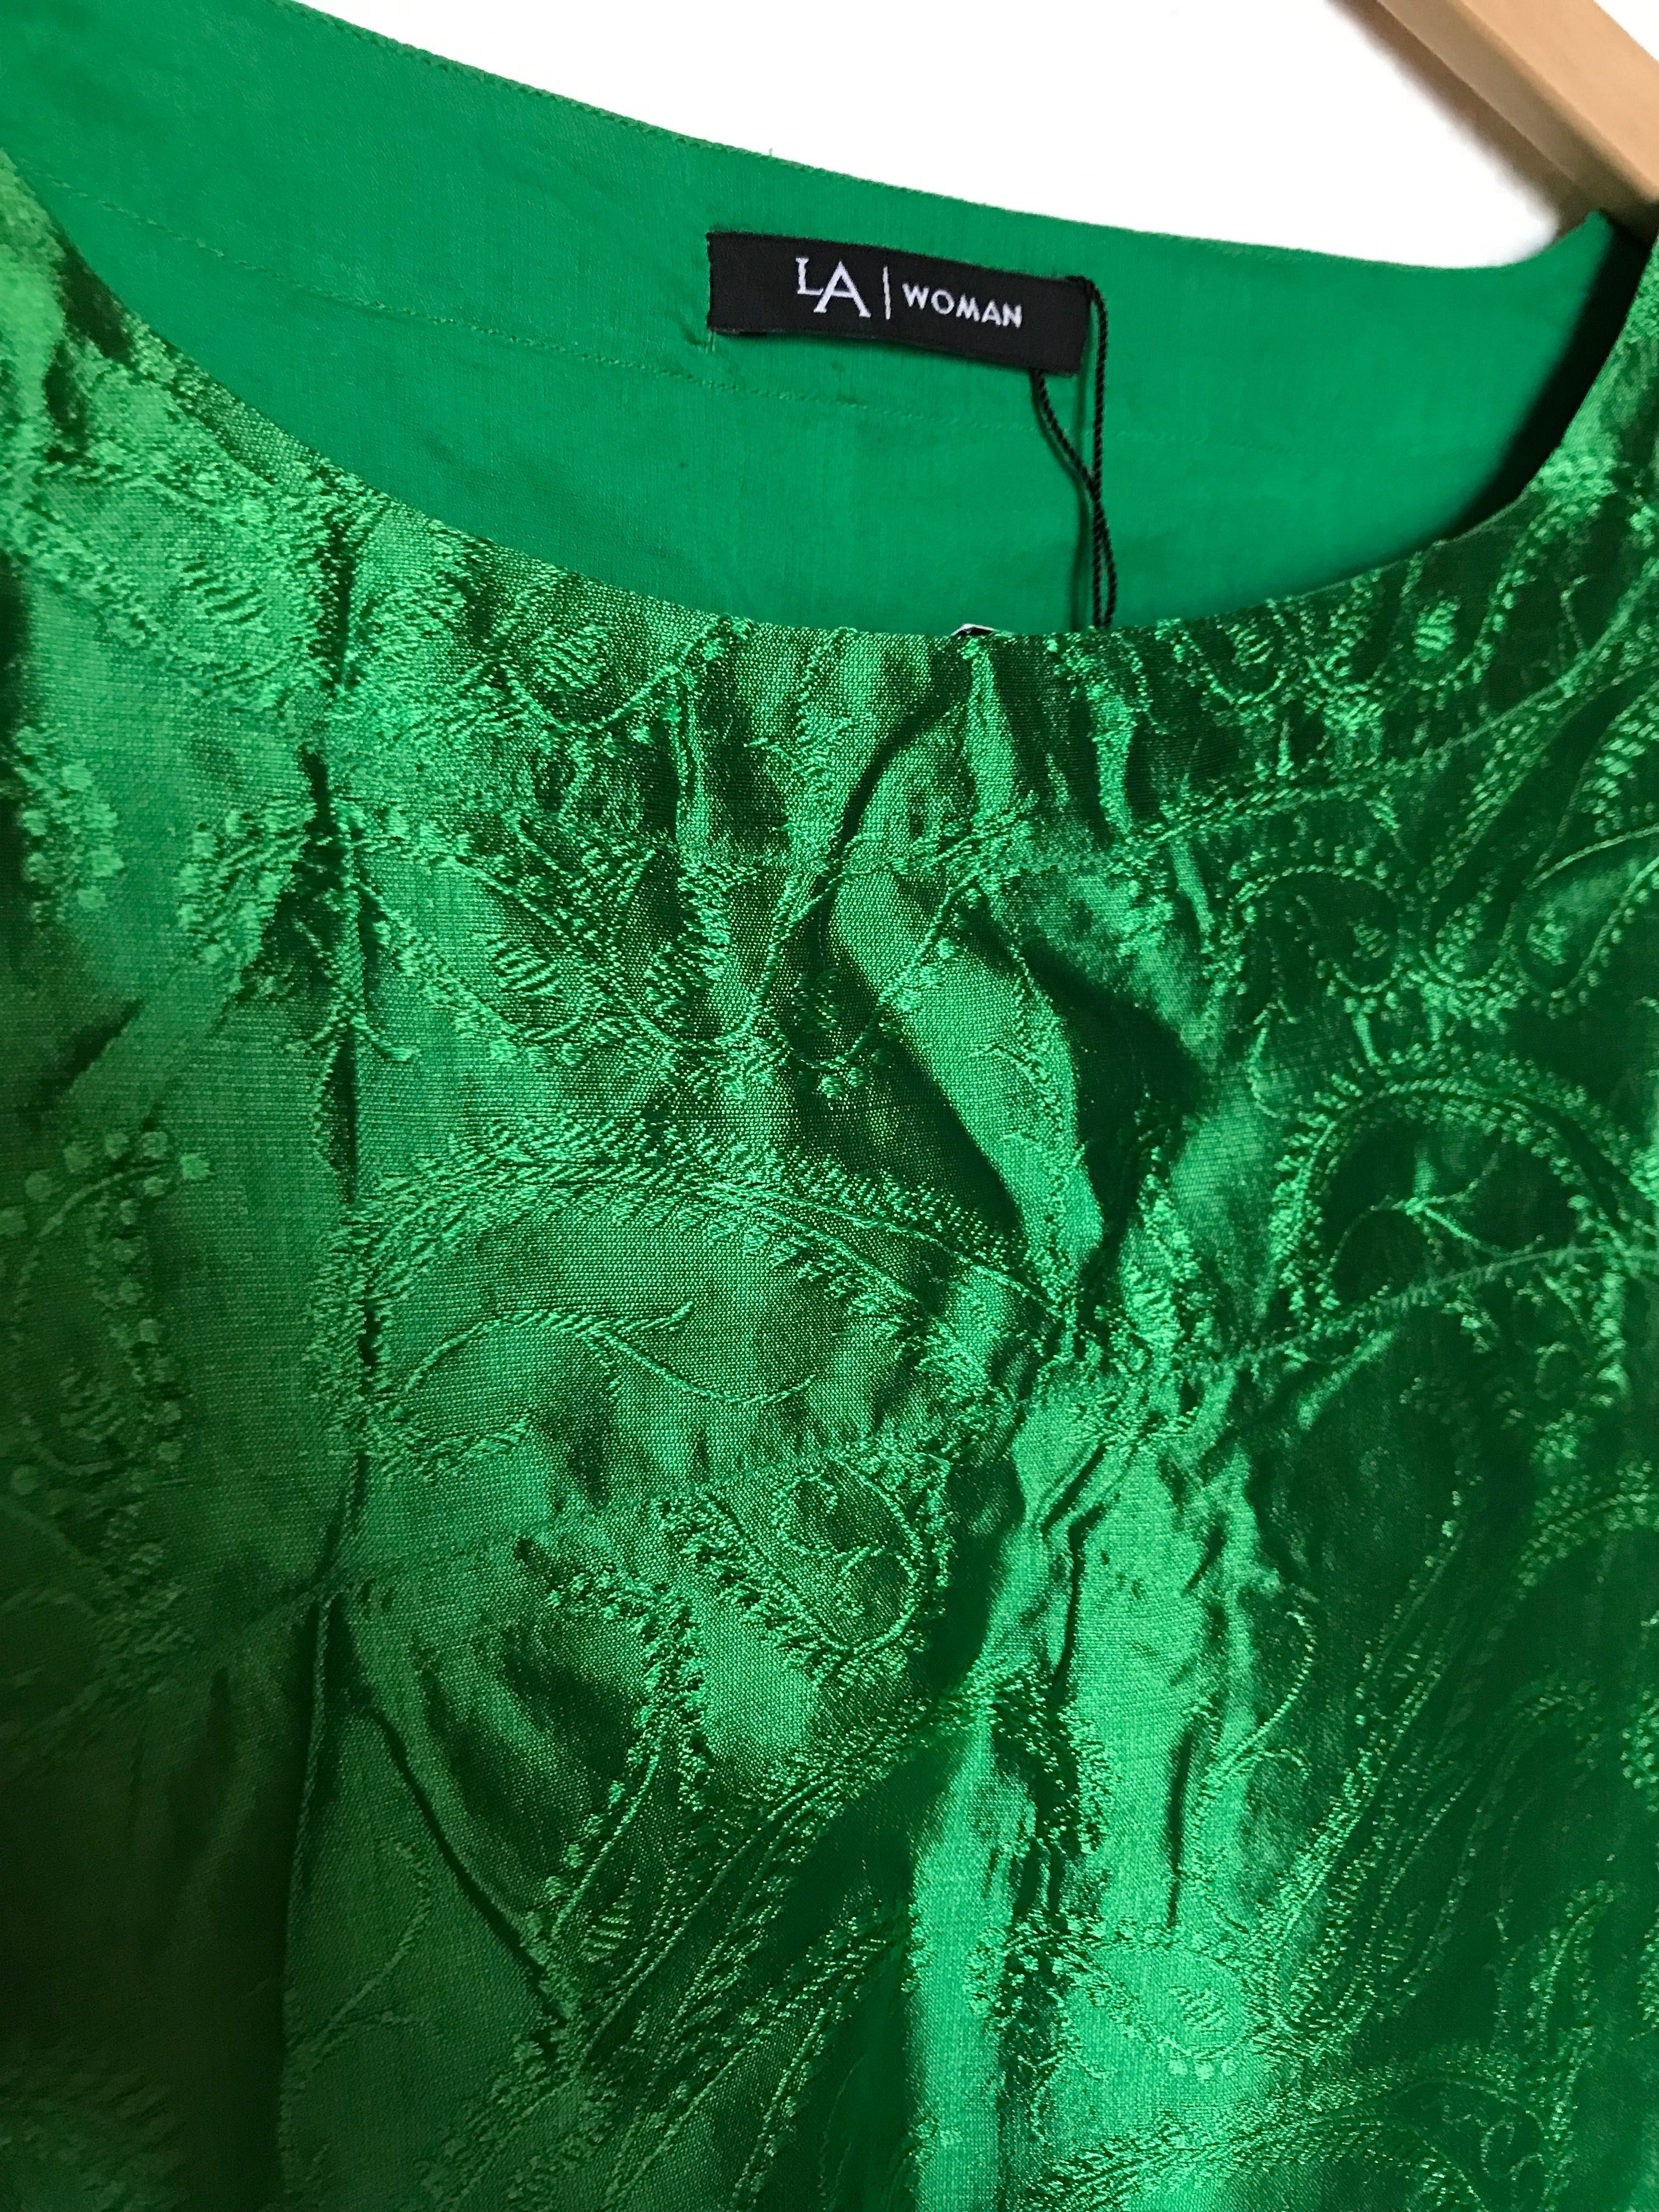 Vestido verde Lanidor por estrear